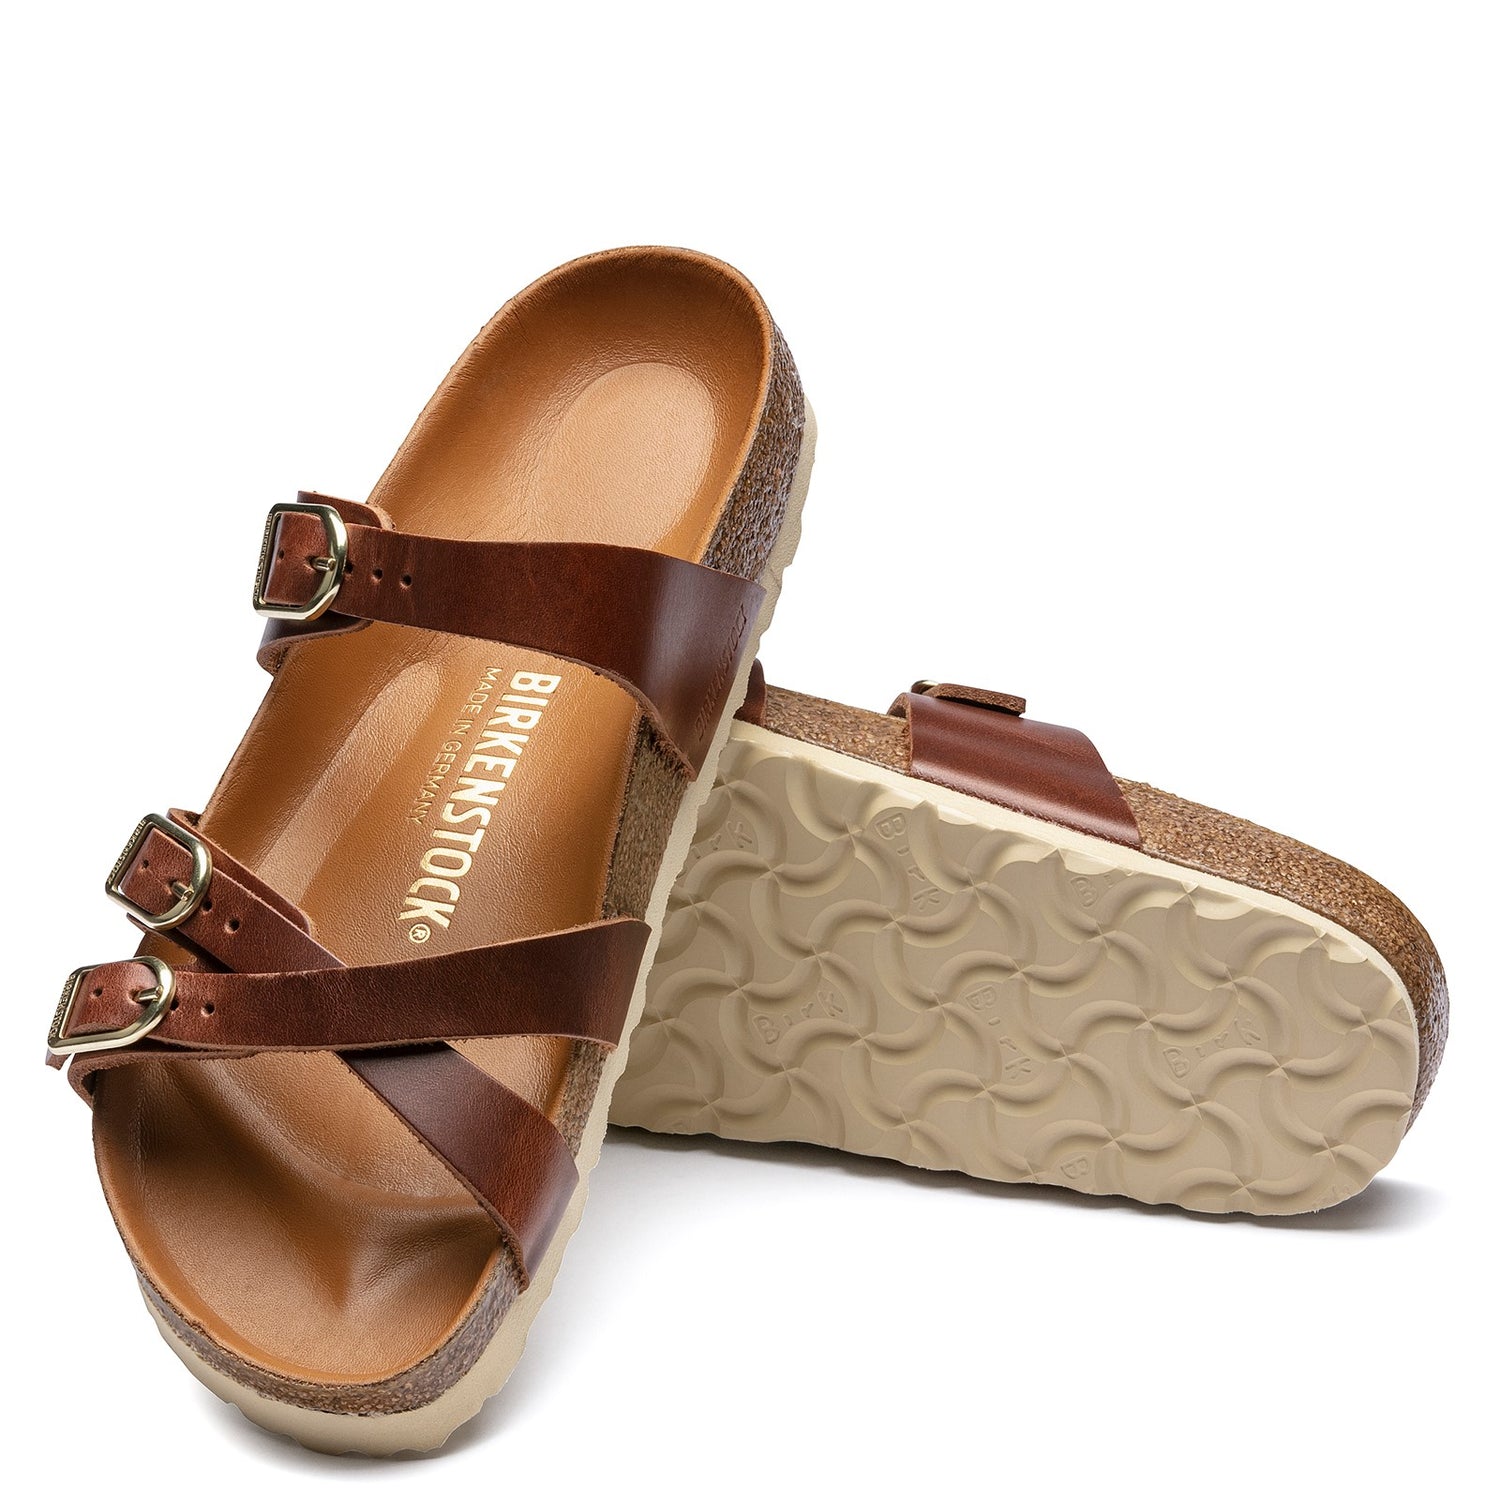 Peltz Shoes  Women's Birkenstock Franca Sandal - Narrow Width COGNAC 1017 568 N